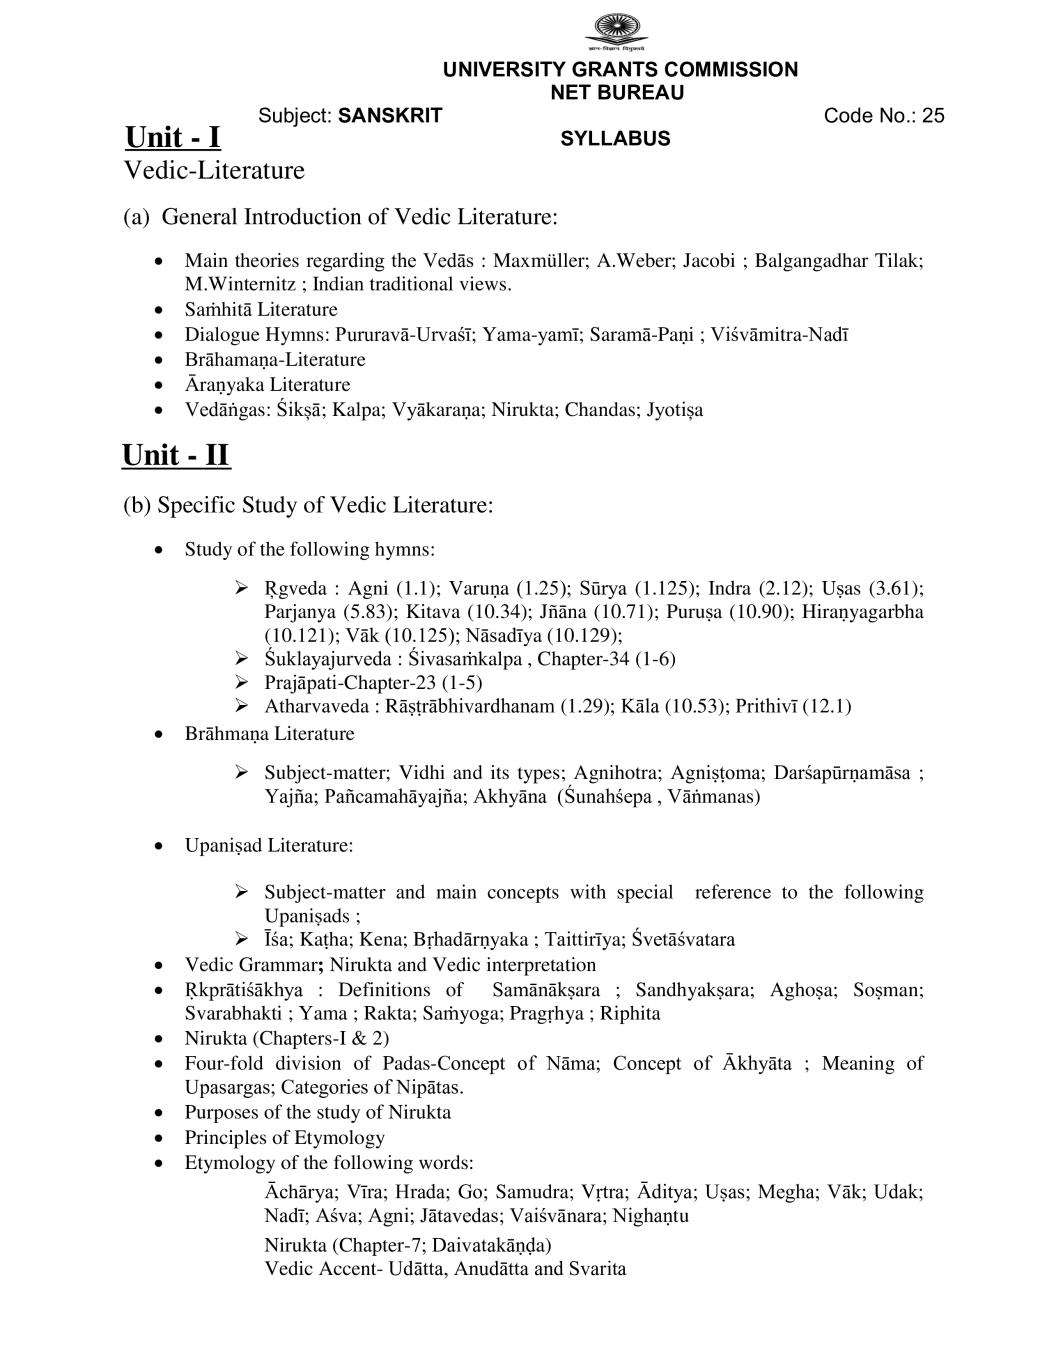 UGC NET Syllabus for Sanskrit 2020 - Page 1